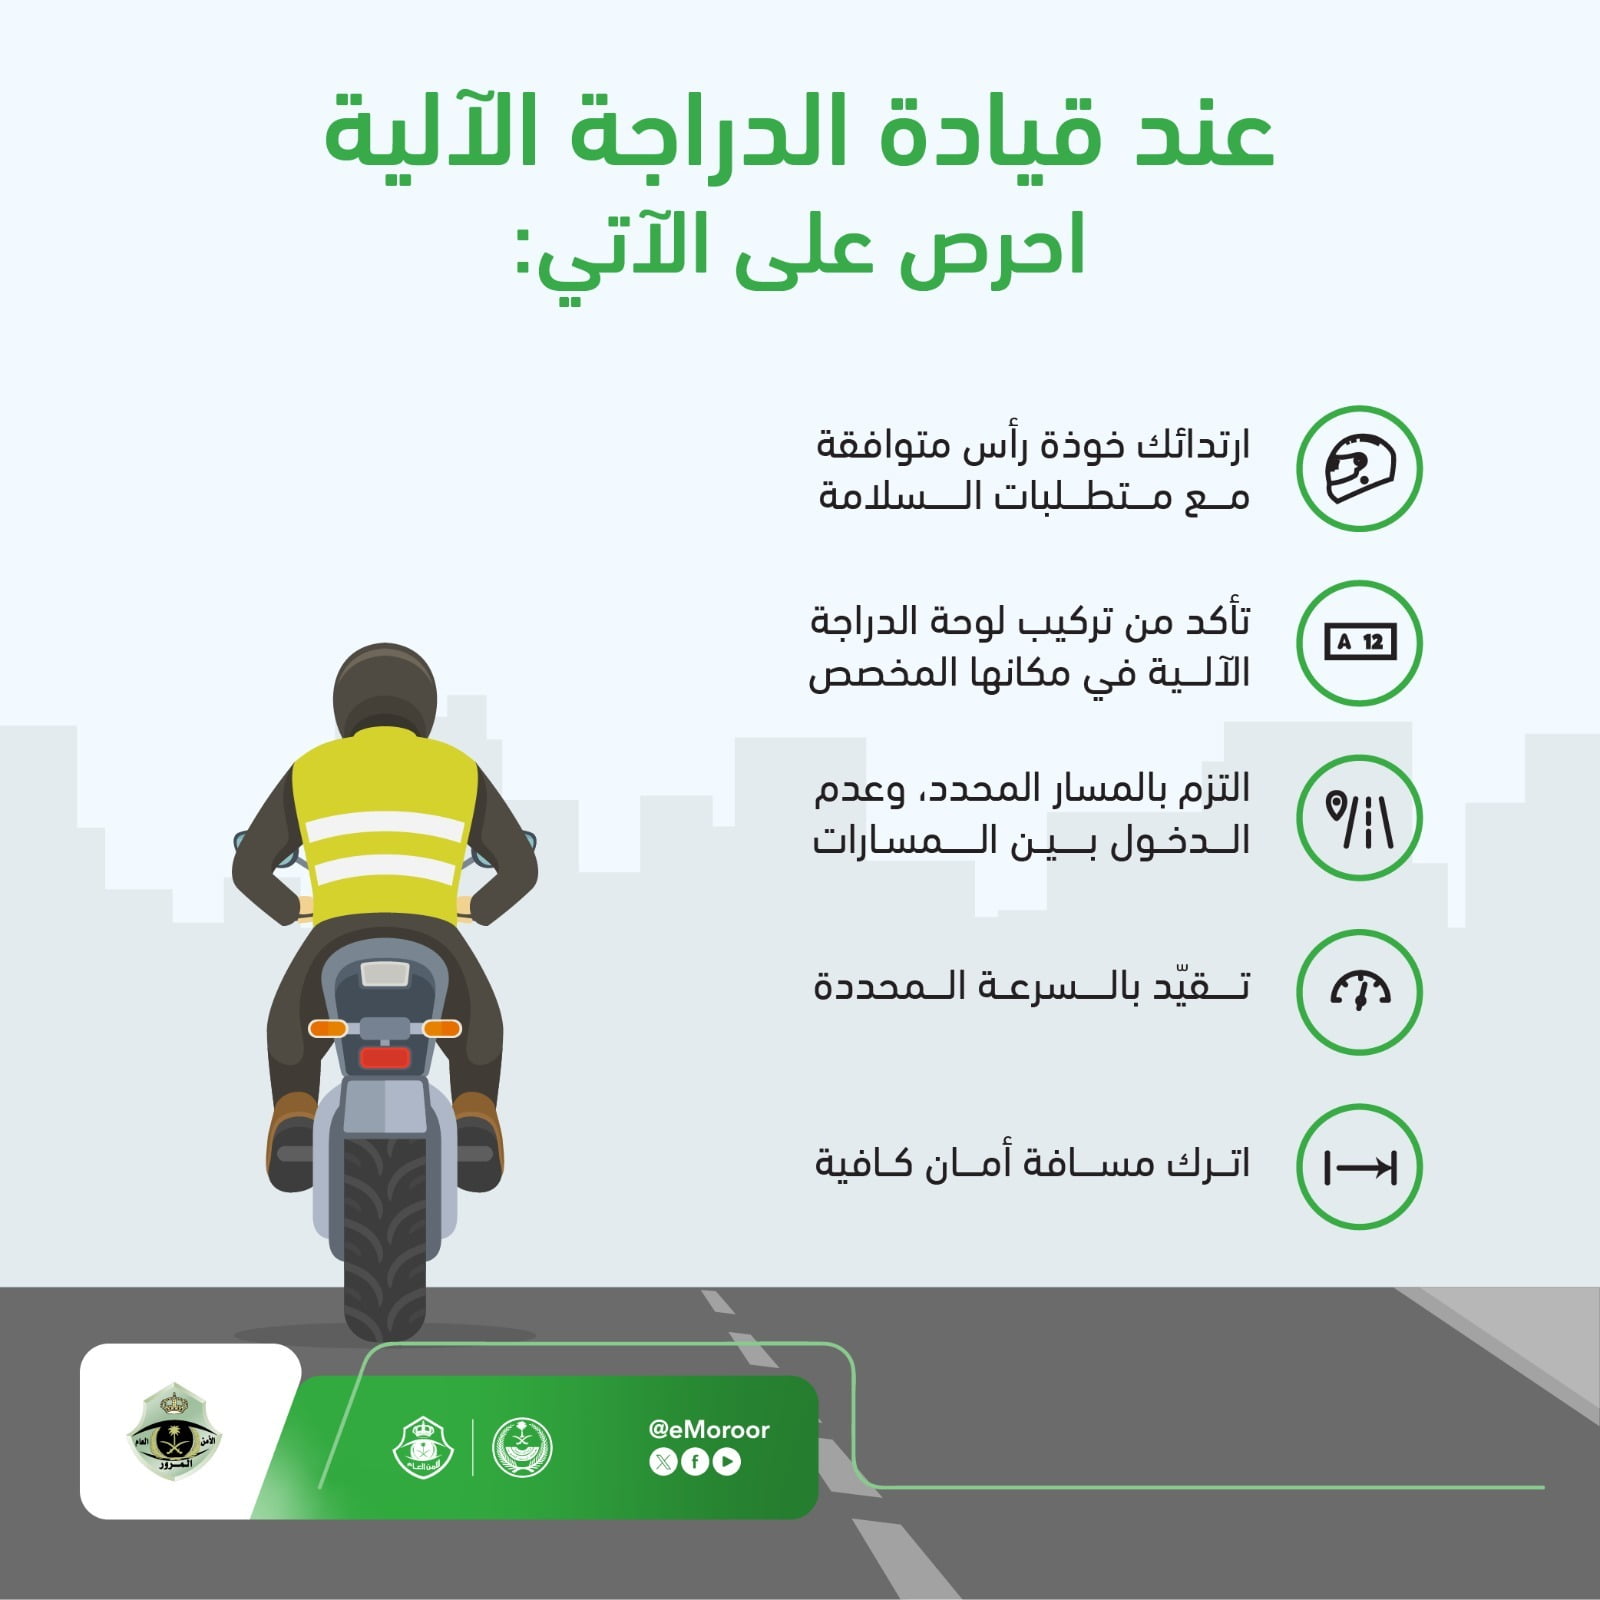 "المرور" يوجه 5 تعليمات لقيادة الدراجات النارية بطريقة آمنة 3